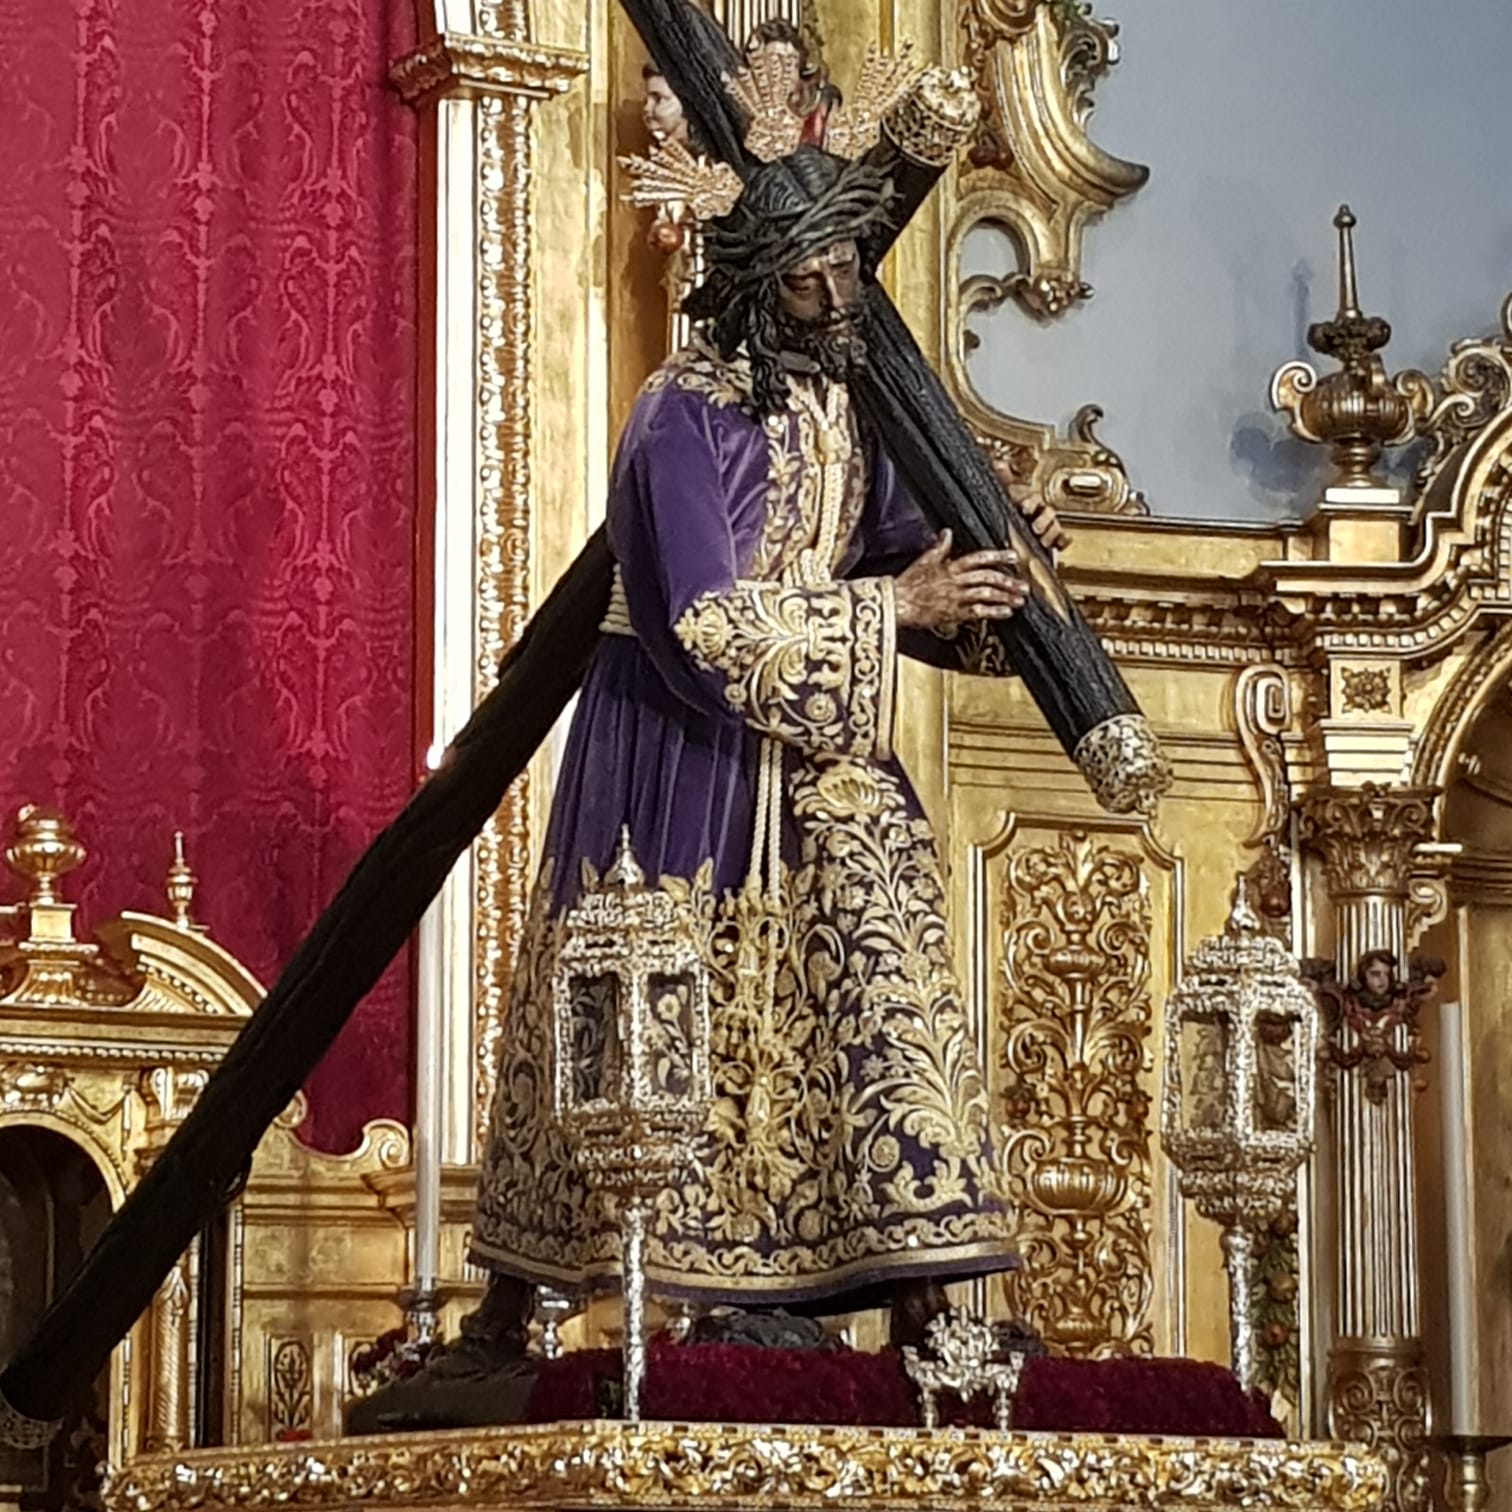 Estas son las procesiones de Semana Santa más conocidas de España 4ADC3B05-3769-42AA-9E9C-30DBBE16A92C